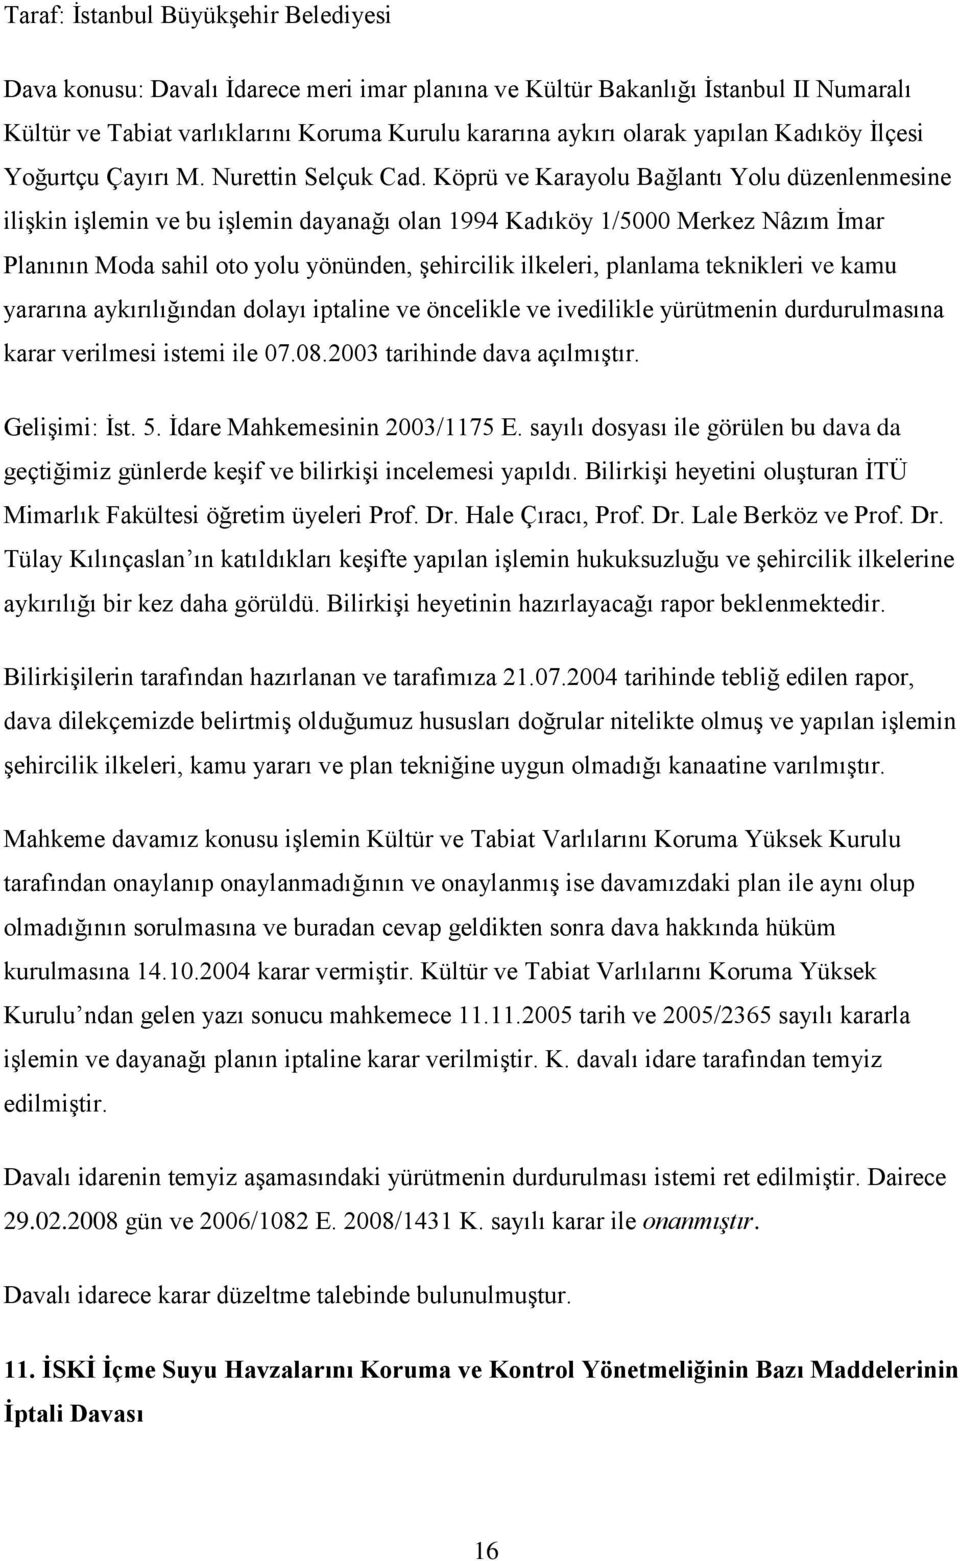 Köprü ve Karayolu Bağlantı Yolu düzenlenmesine ilişkin işlemin ve bu işlemin dayanağı olan 1994 Kadıköy 1/5000 Merkez Nâzım İmar Planının Moda sahil oto yolu yönünden, şehircilik ilkeleri, planlama